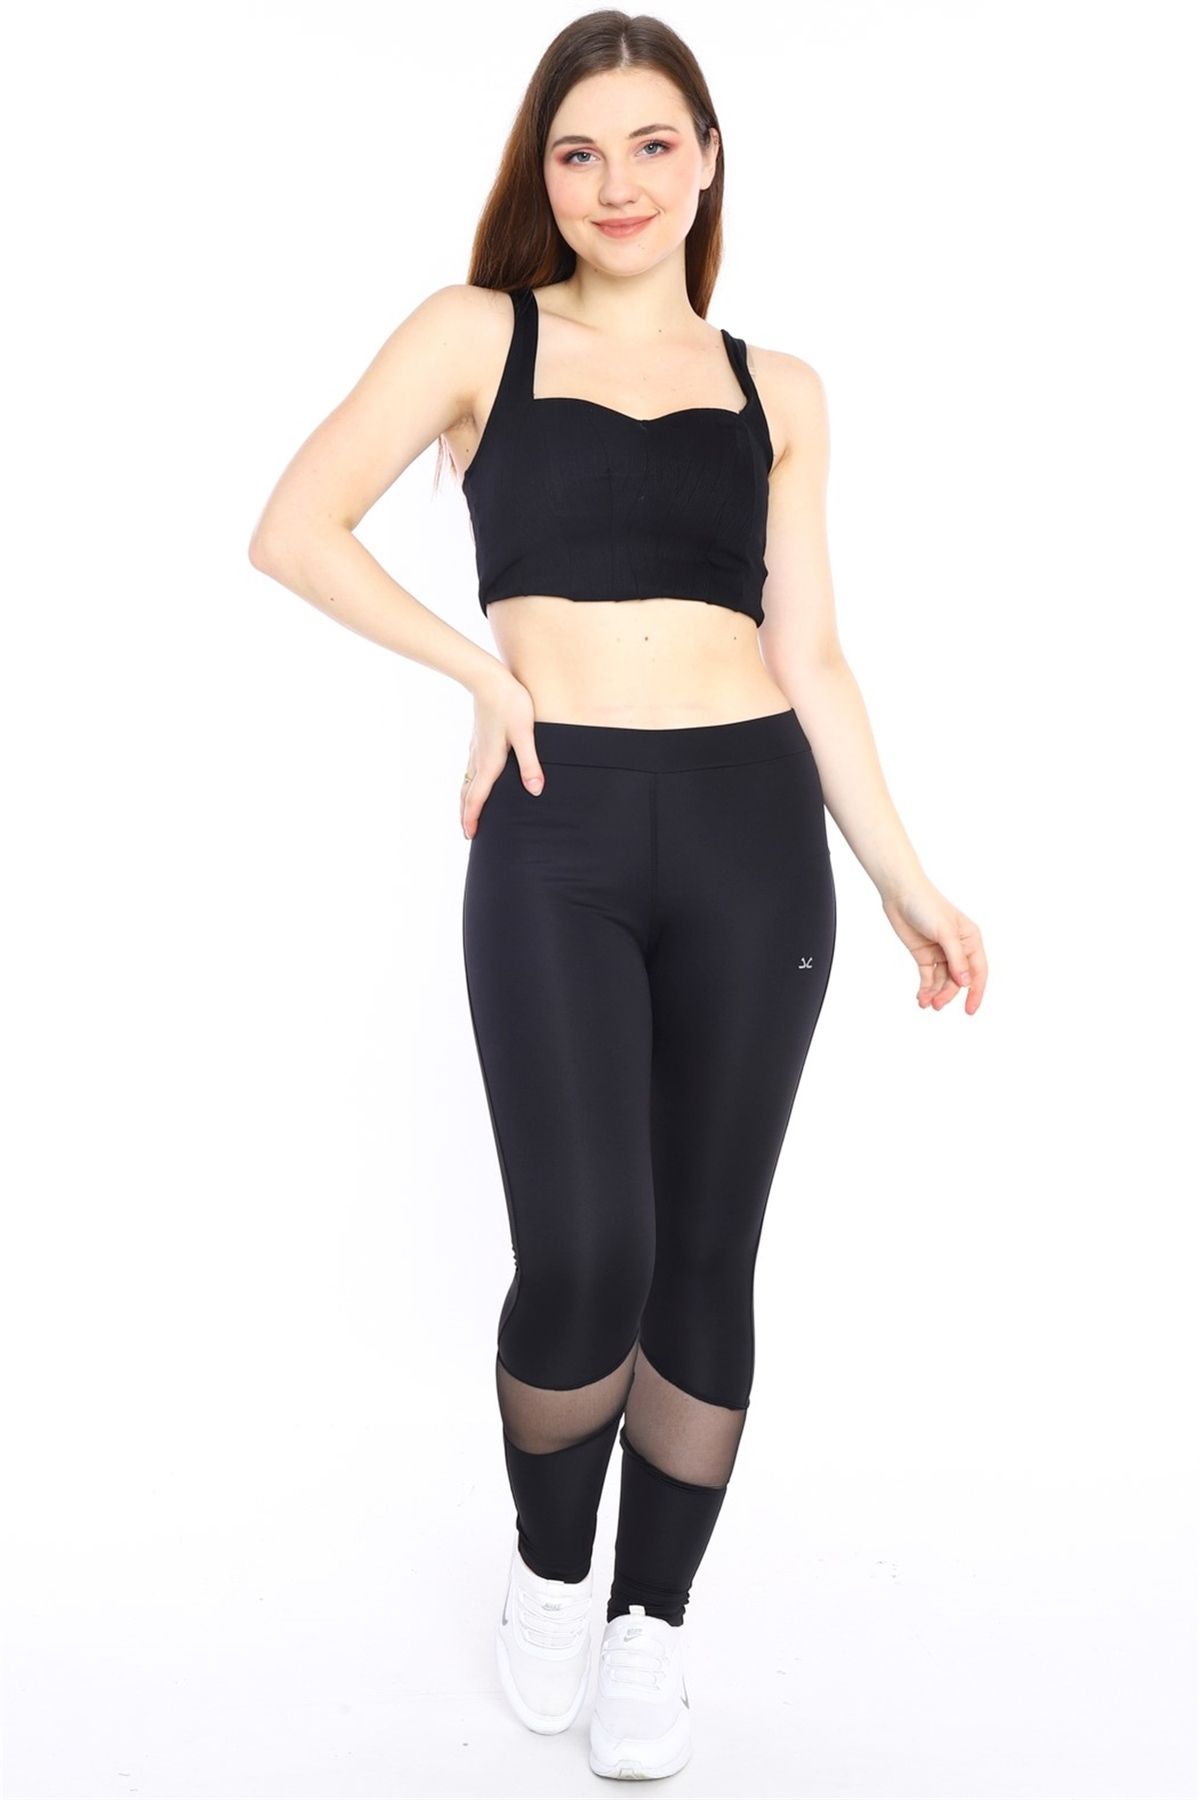 Escetic Siyah Kadın Polyester Normal Bel Diz Altı Transparan Detay Spor Tayt 0351